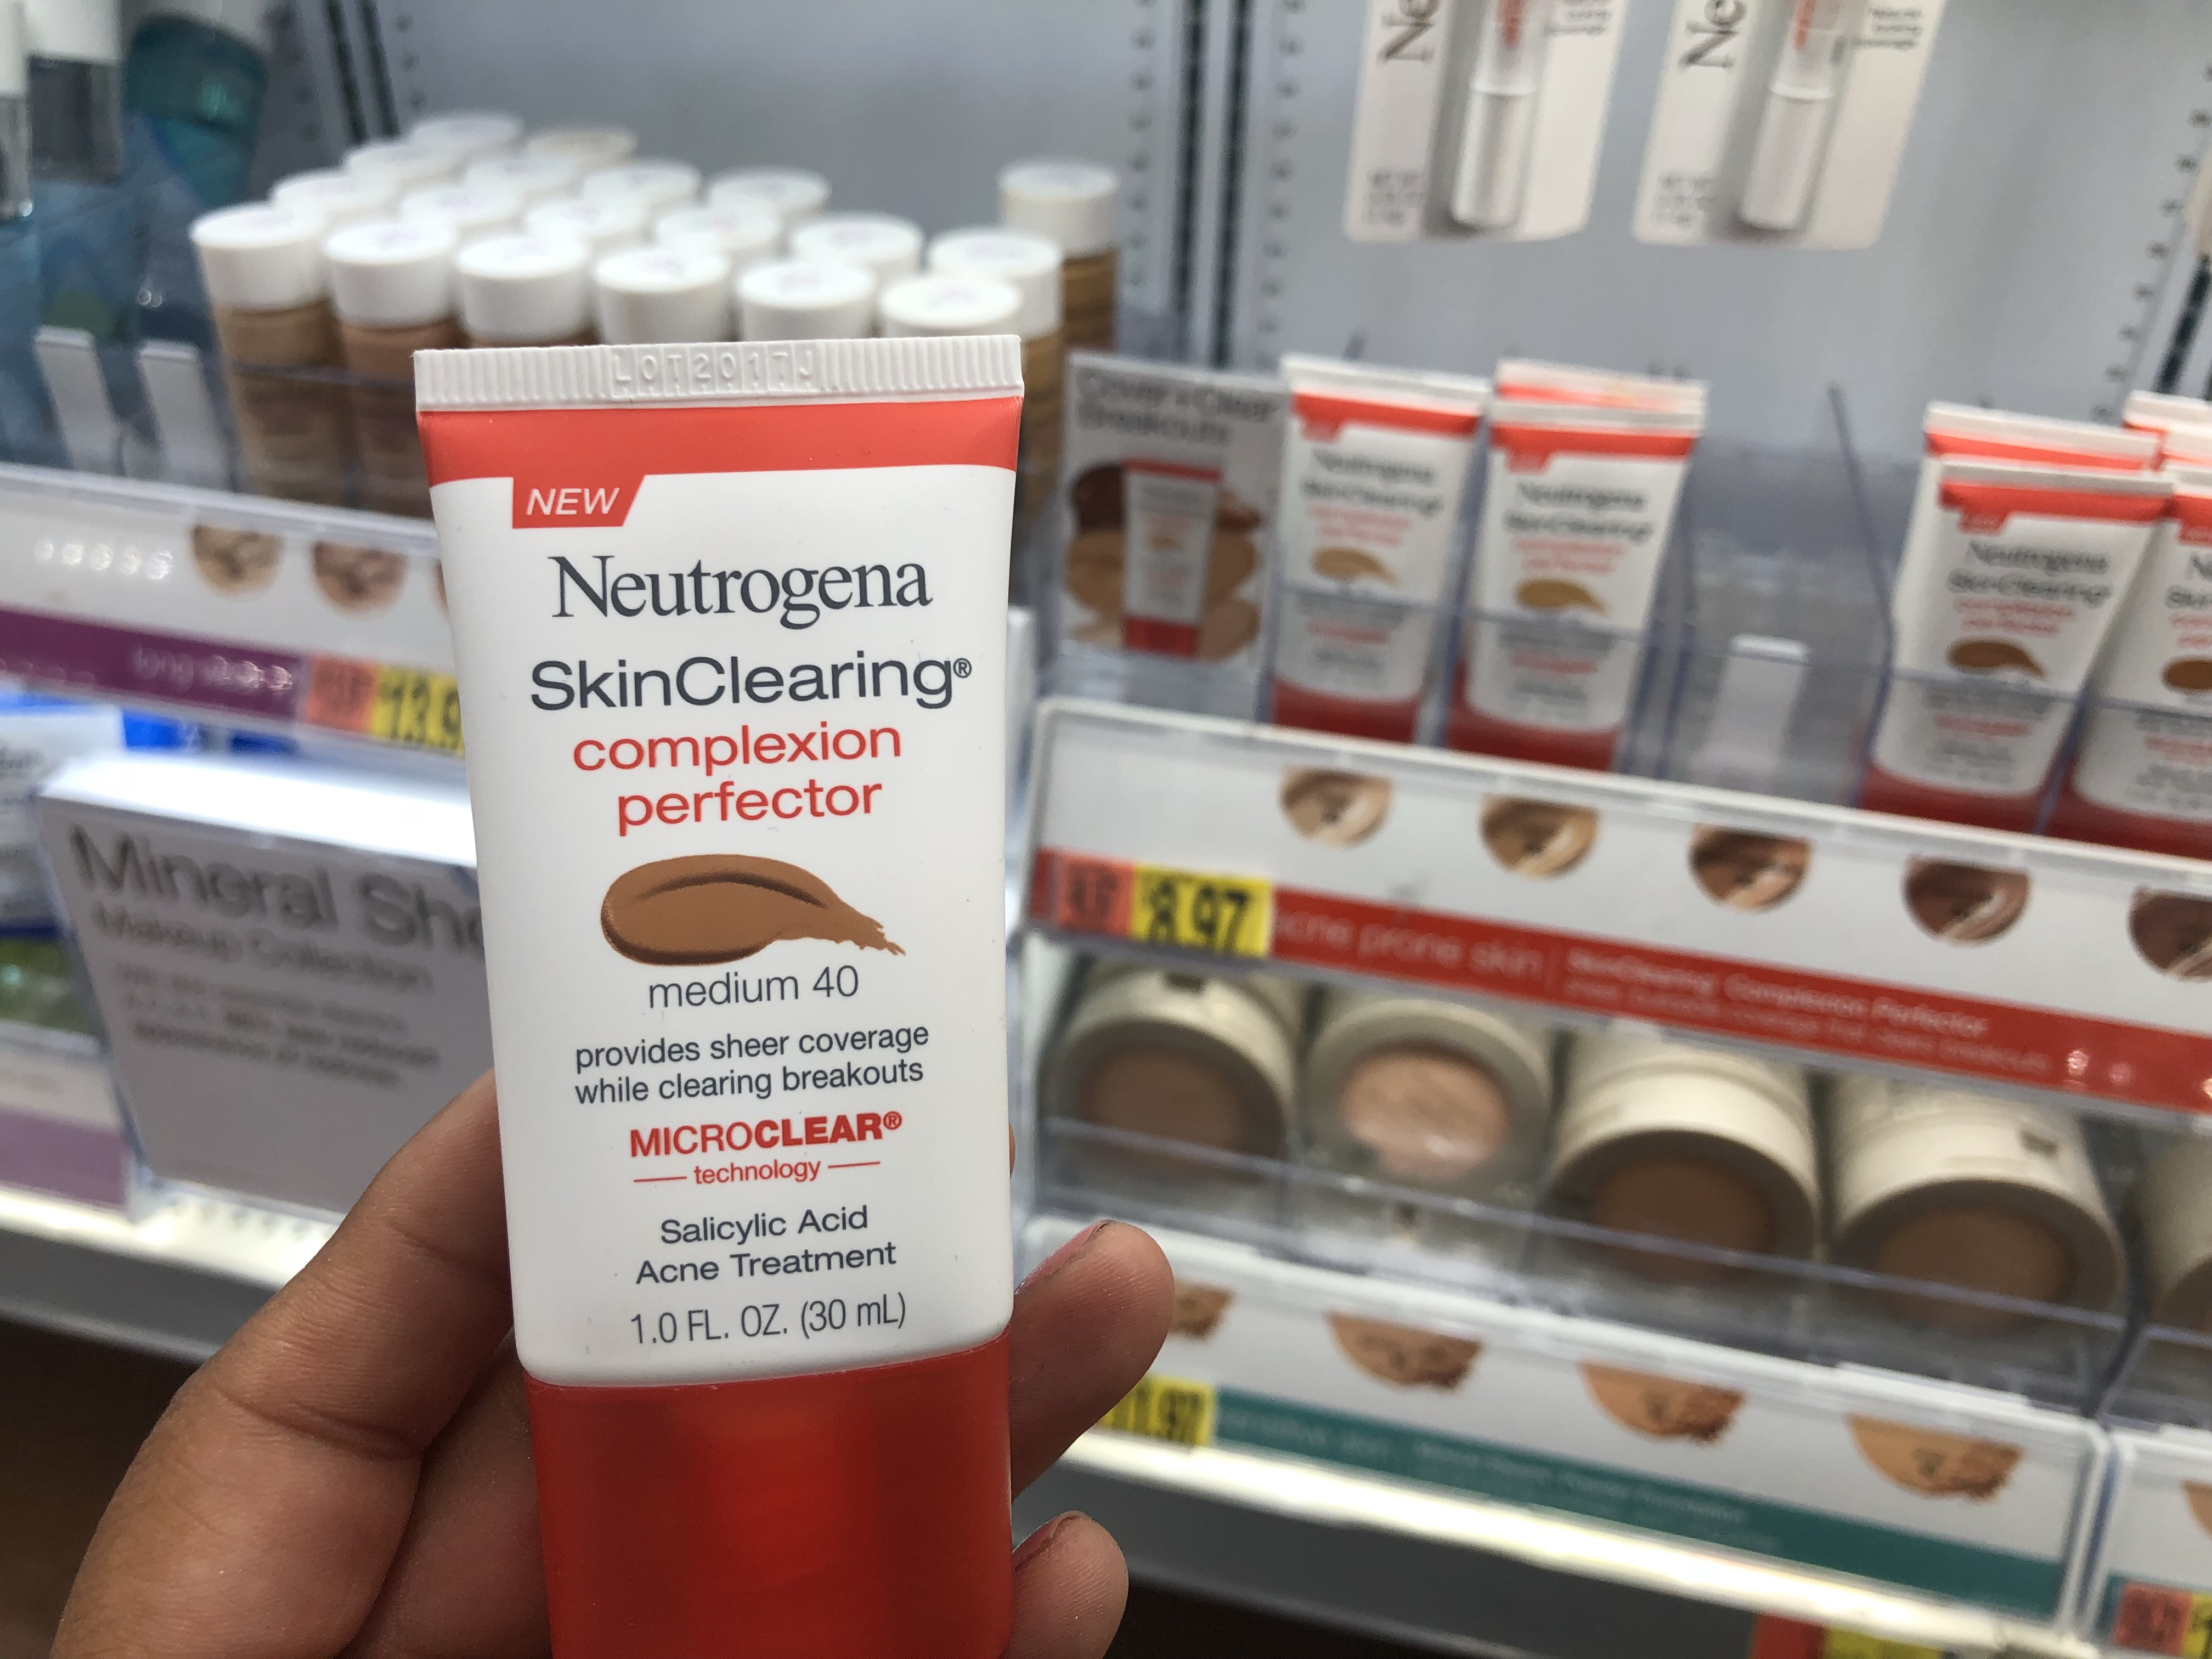 neutrogena products at walmart